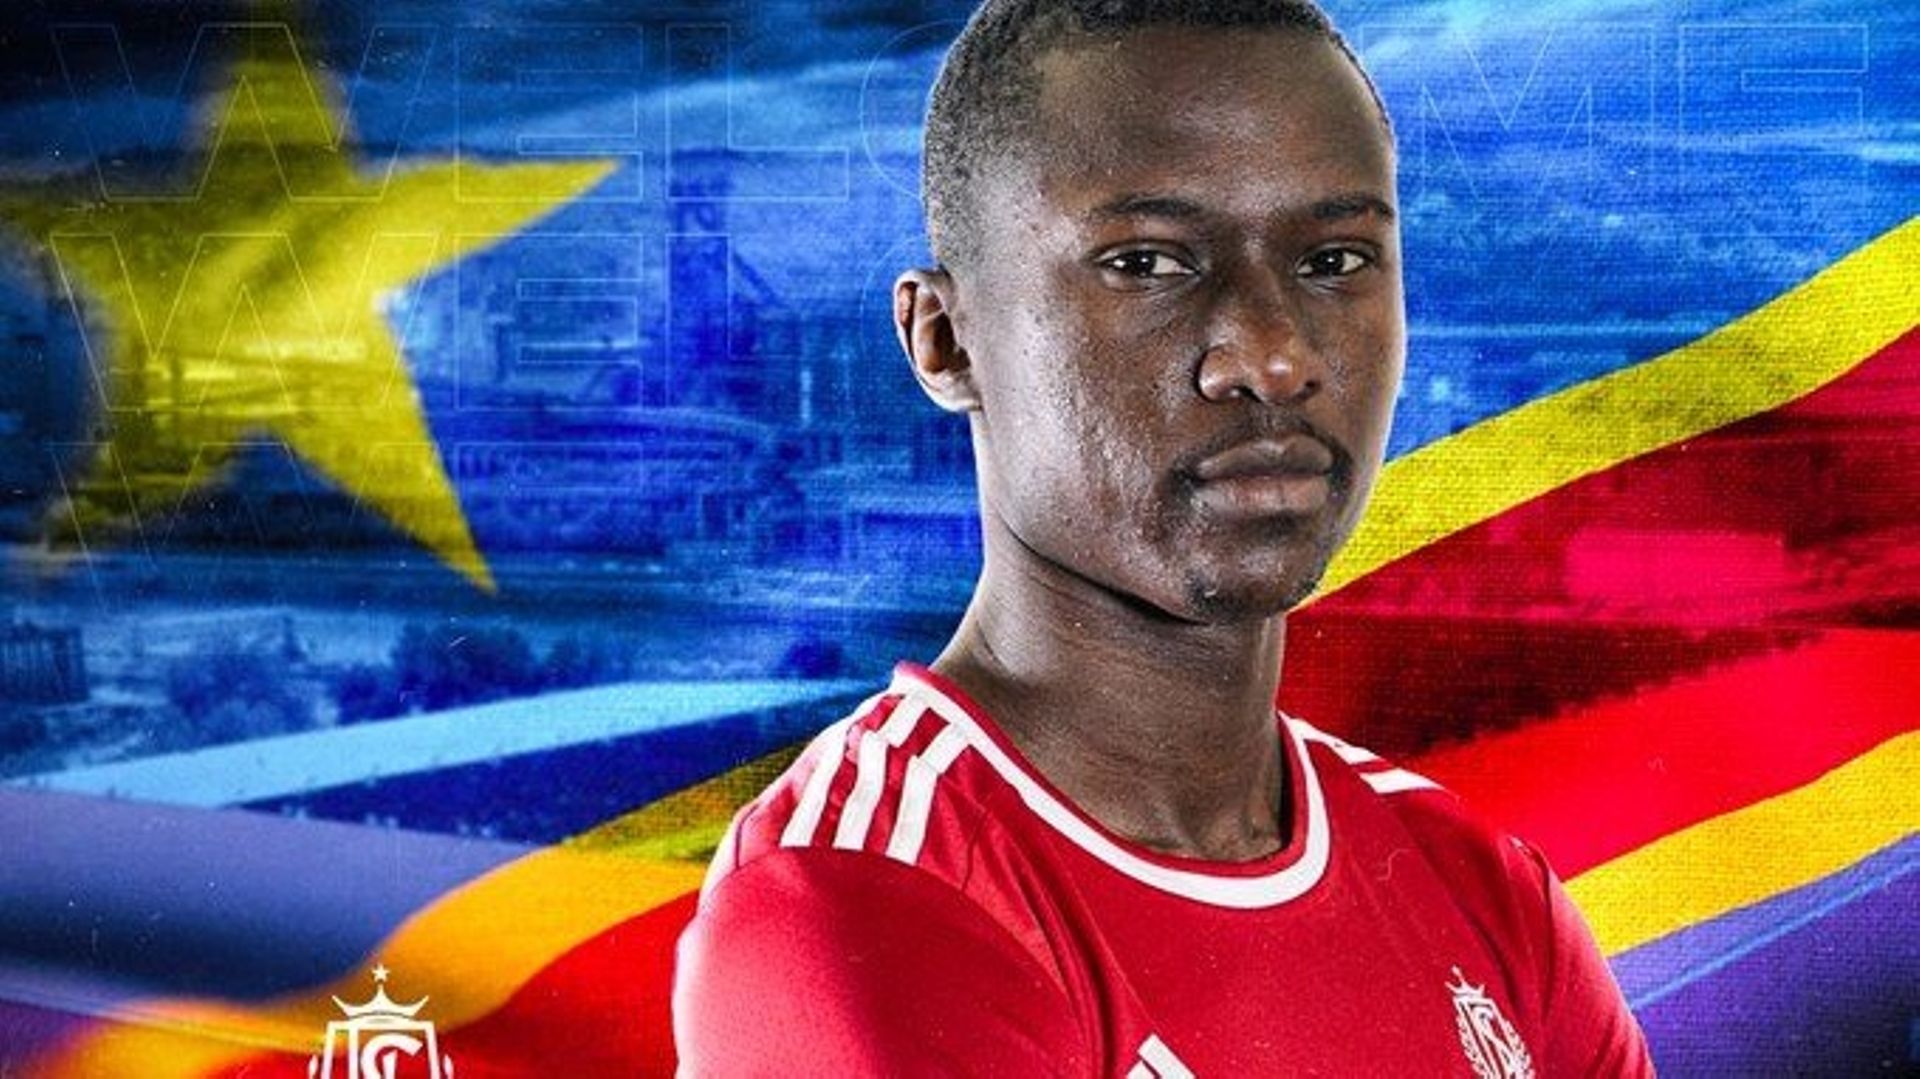 Glody Likonza est prêté pour une saison au Standard par le club congolais du Tout Puissant Mazembe, a annoncé lundi le club liégeois, qui dispose d’une option d’achat.